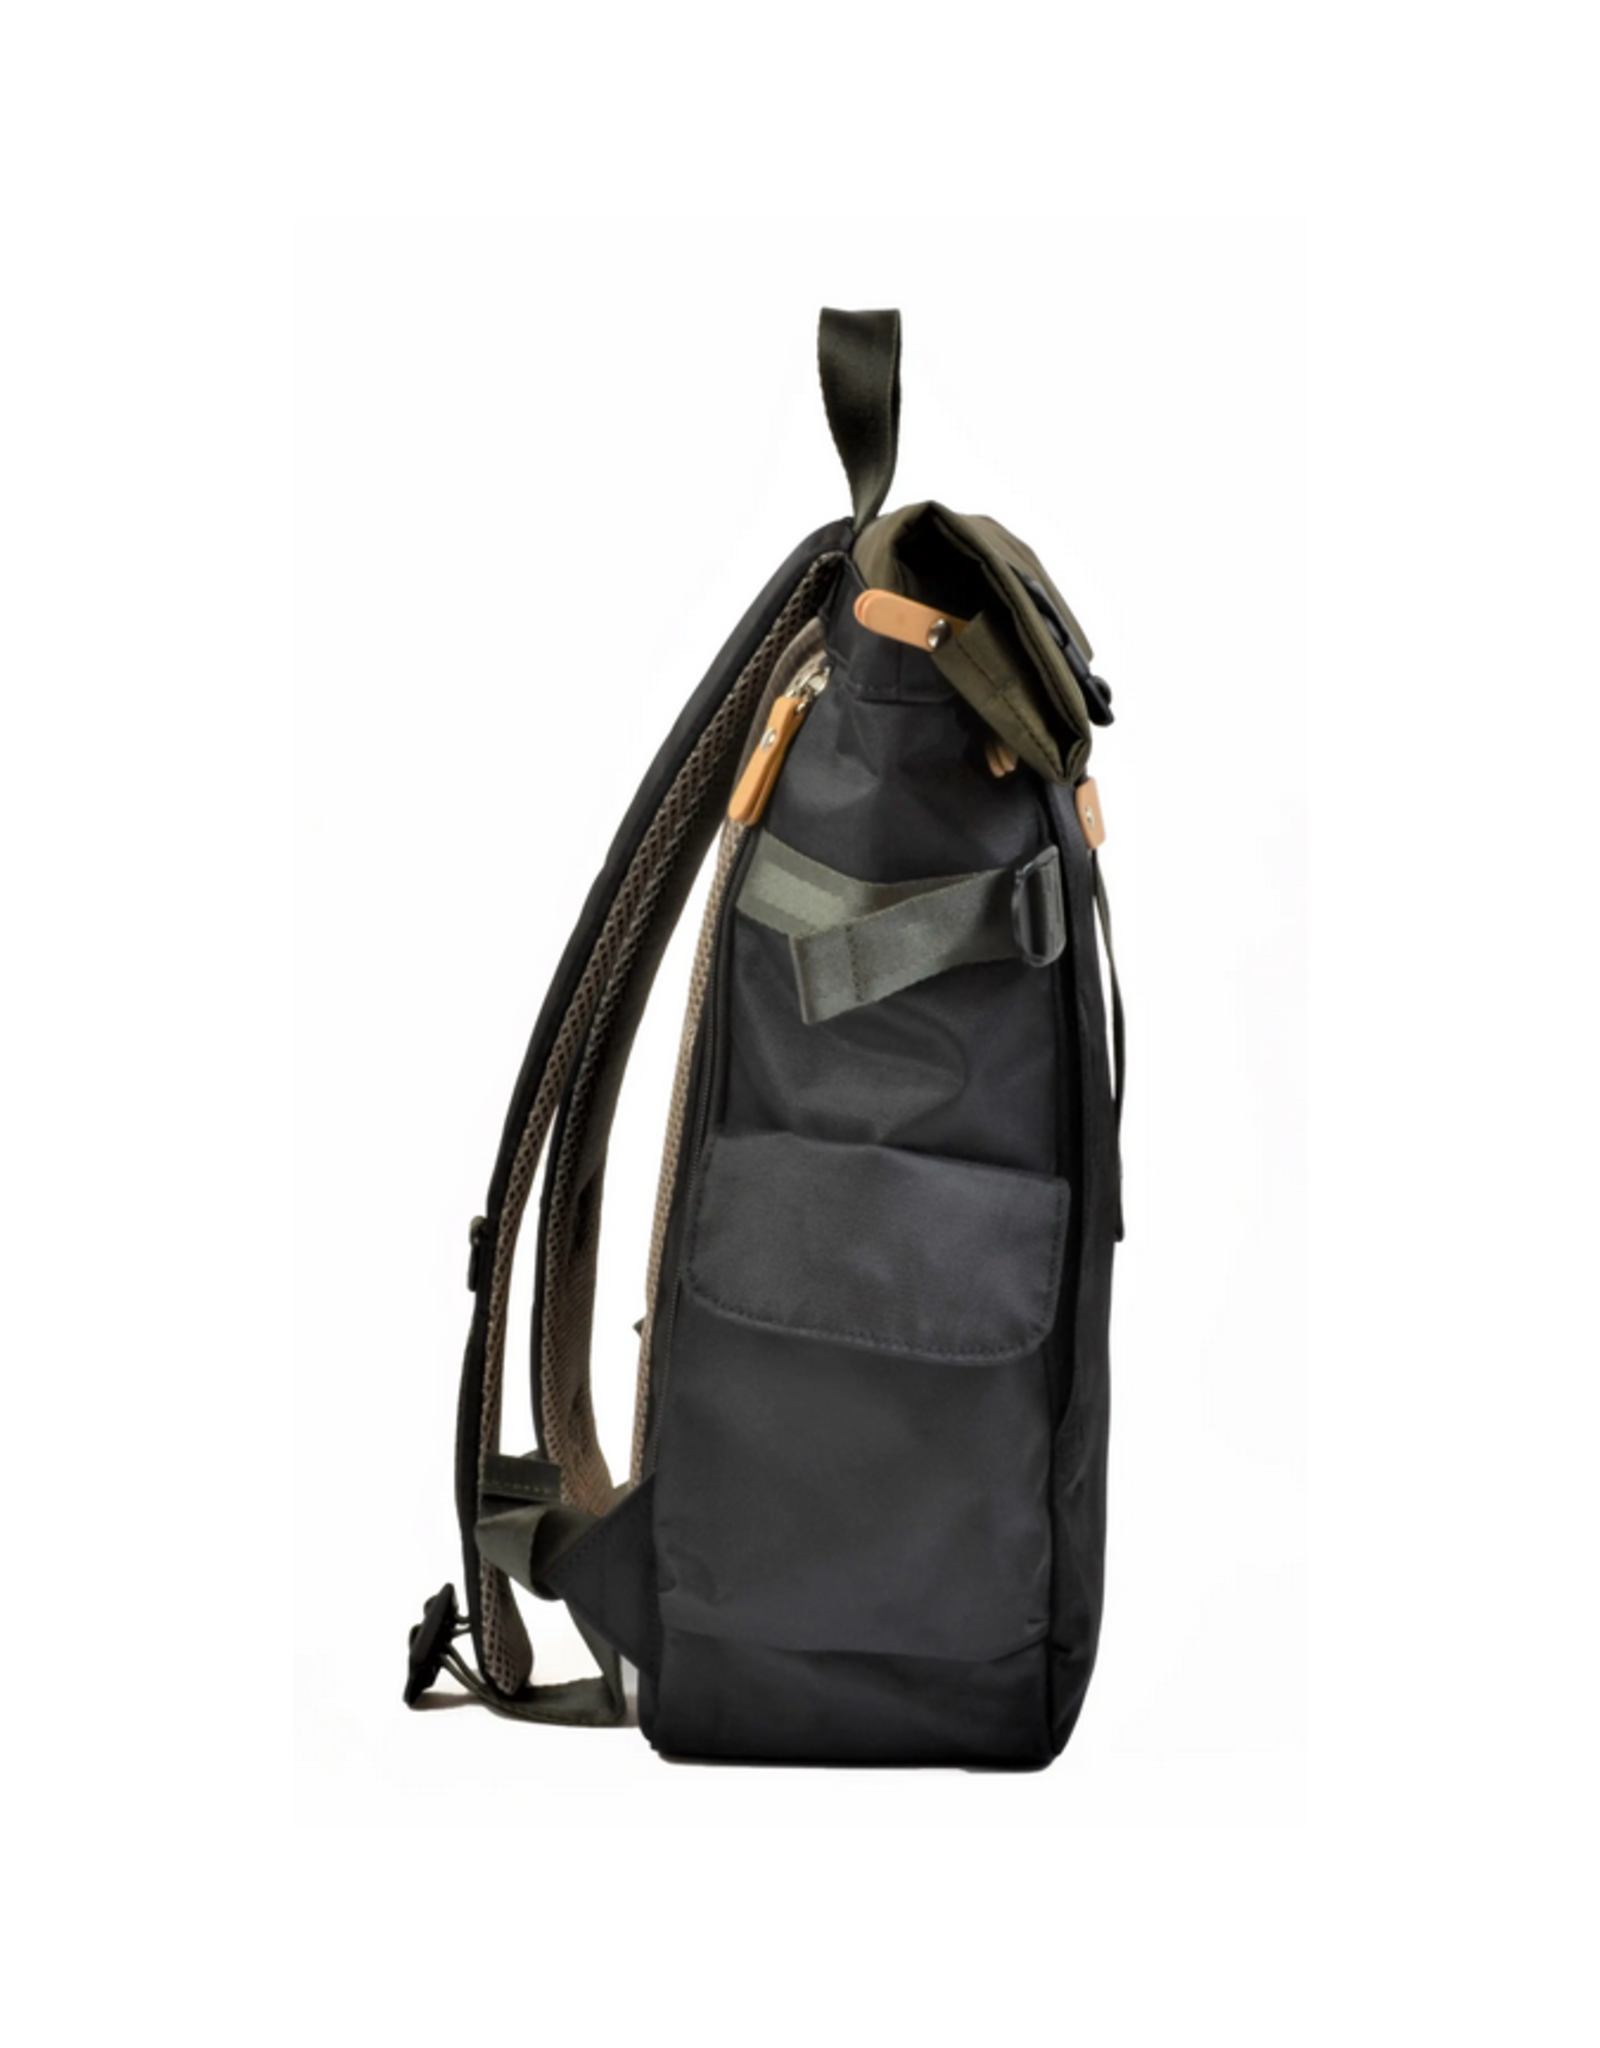 Rolltop Backpack - Olive/Black